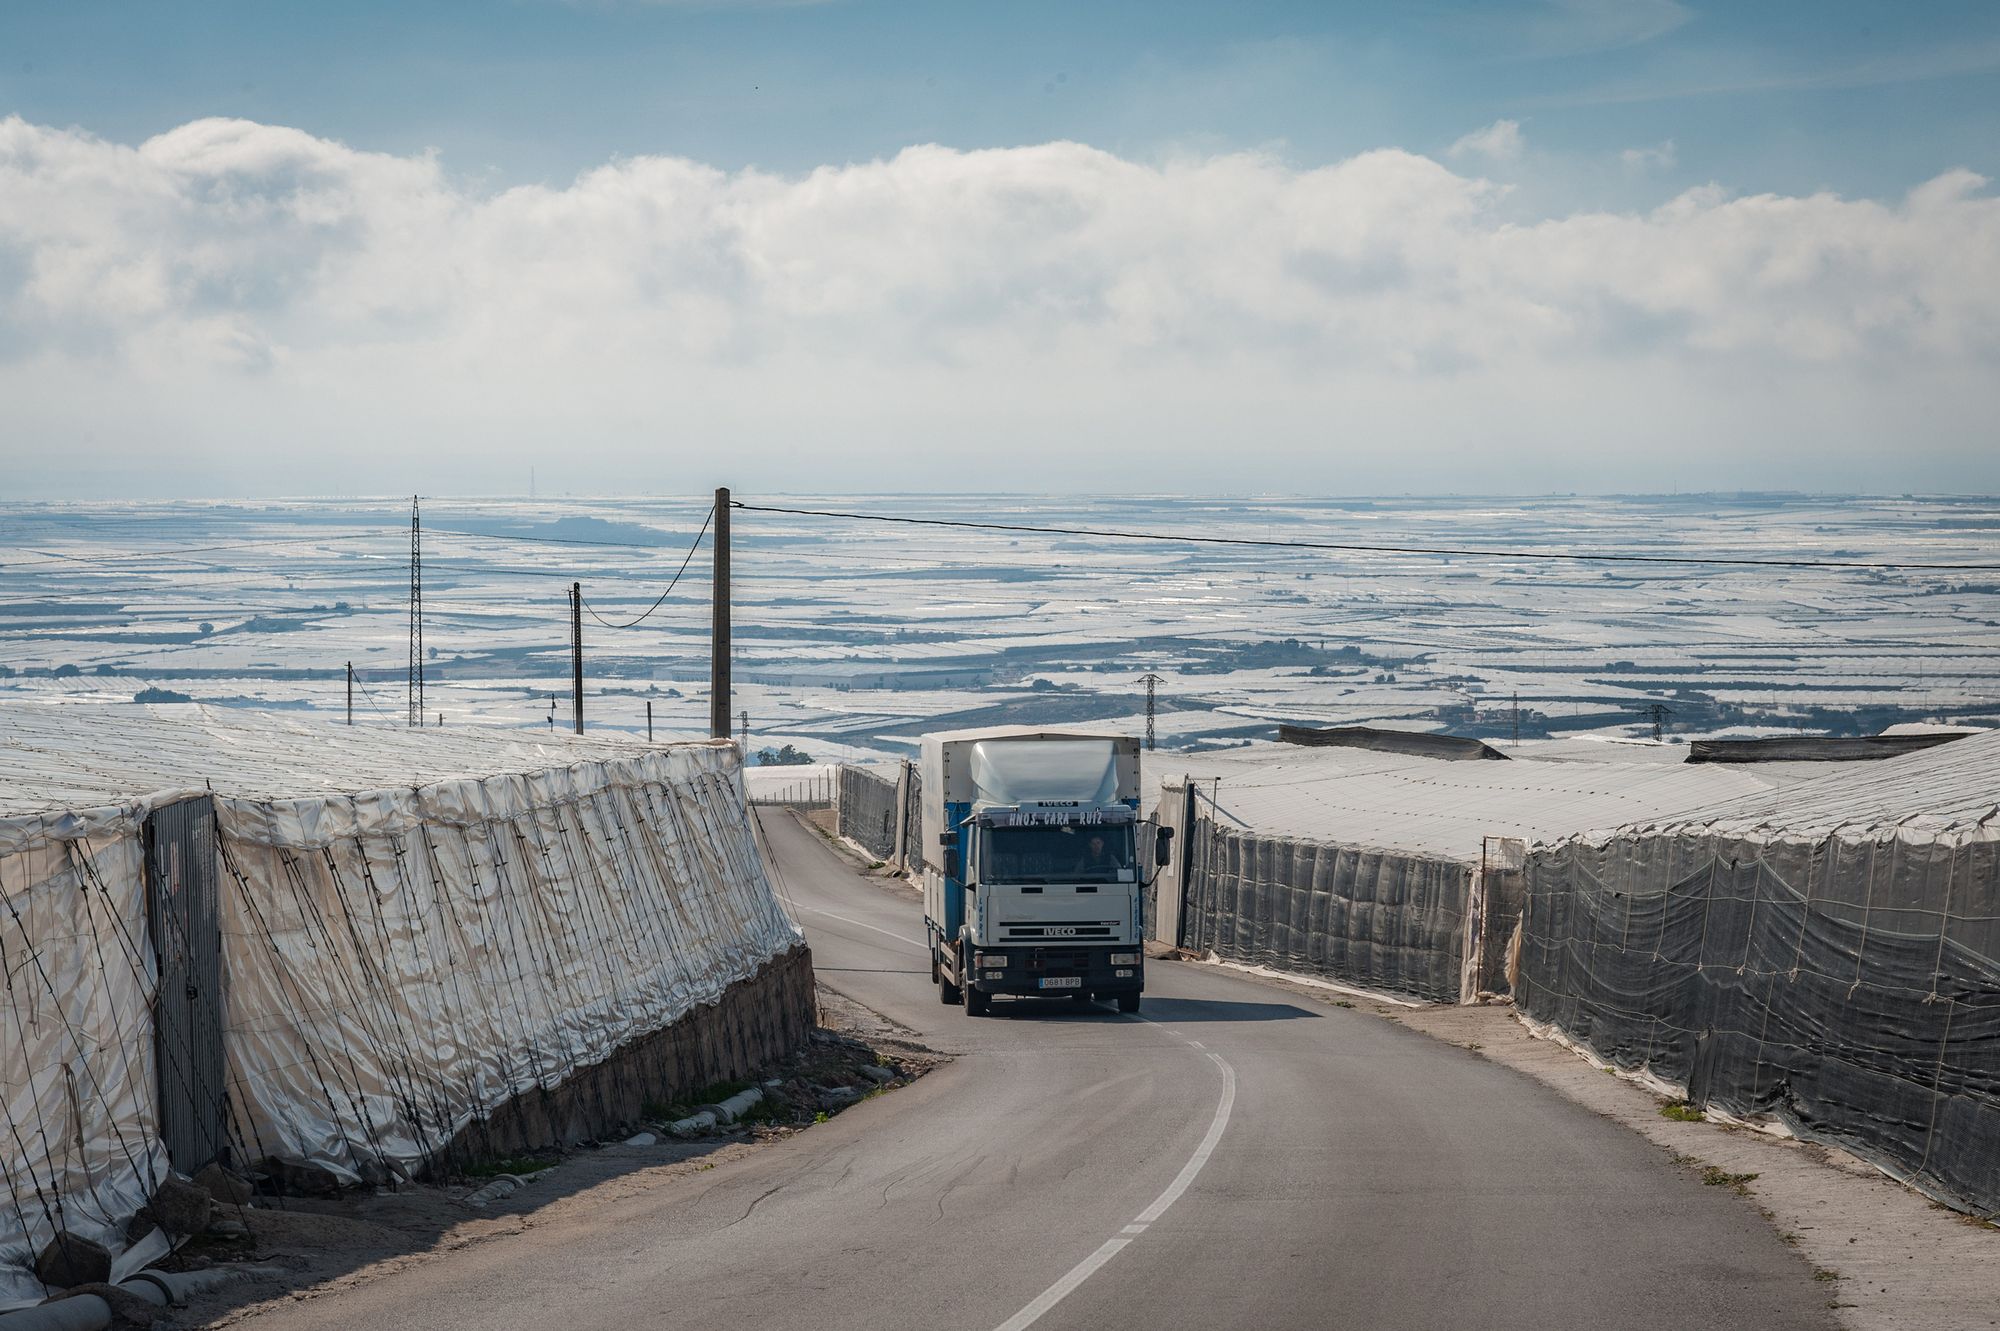 Un camion traverse ce que l'on appelle la "mer de plastique" constituée de dizaine de milliers de serres d exploitations agricoles qui s'étendent à perte de vue dans le sud-est de l'Espagne. El Ejido. 7 février 2019.